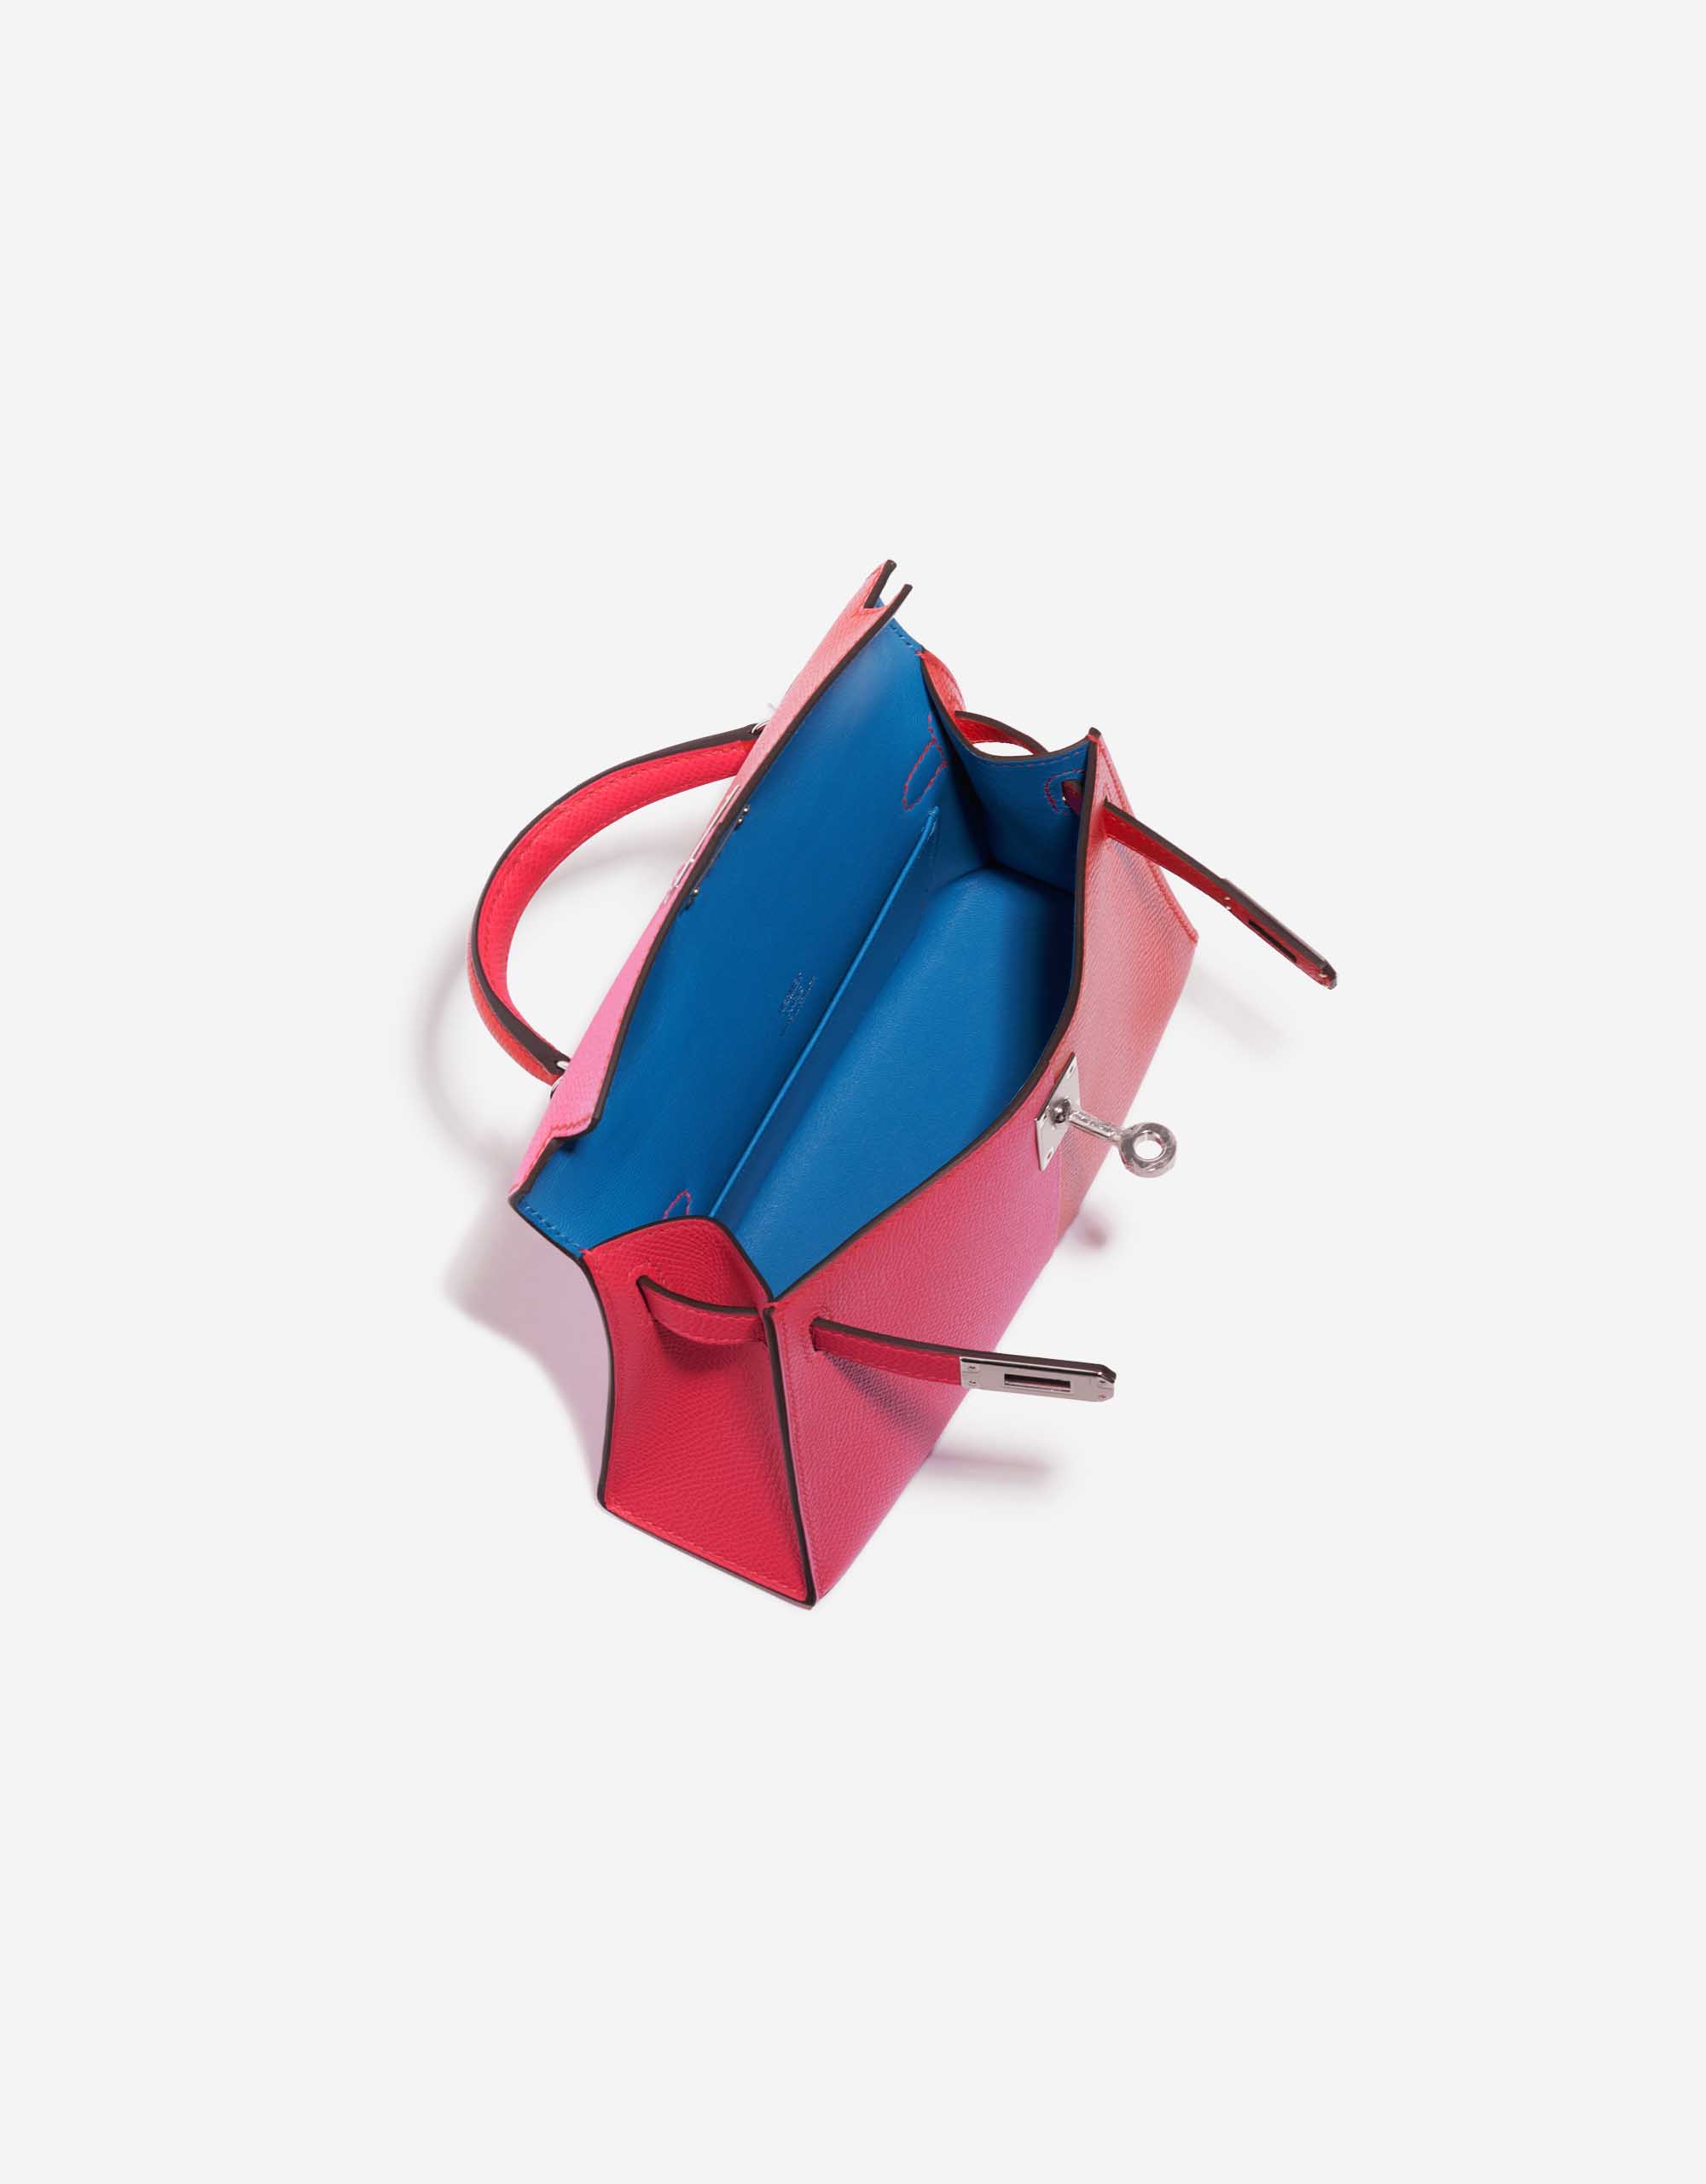 Gebrauchte Hermès Tasche Kelly Mini Epsom Rose Extreme / Rouge de Coeur / Blue Zanzibar Red, Rose Inside | Verkaufen Sie Ihre Designer-Tasche auf Saclab.com